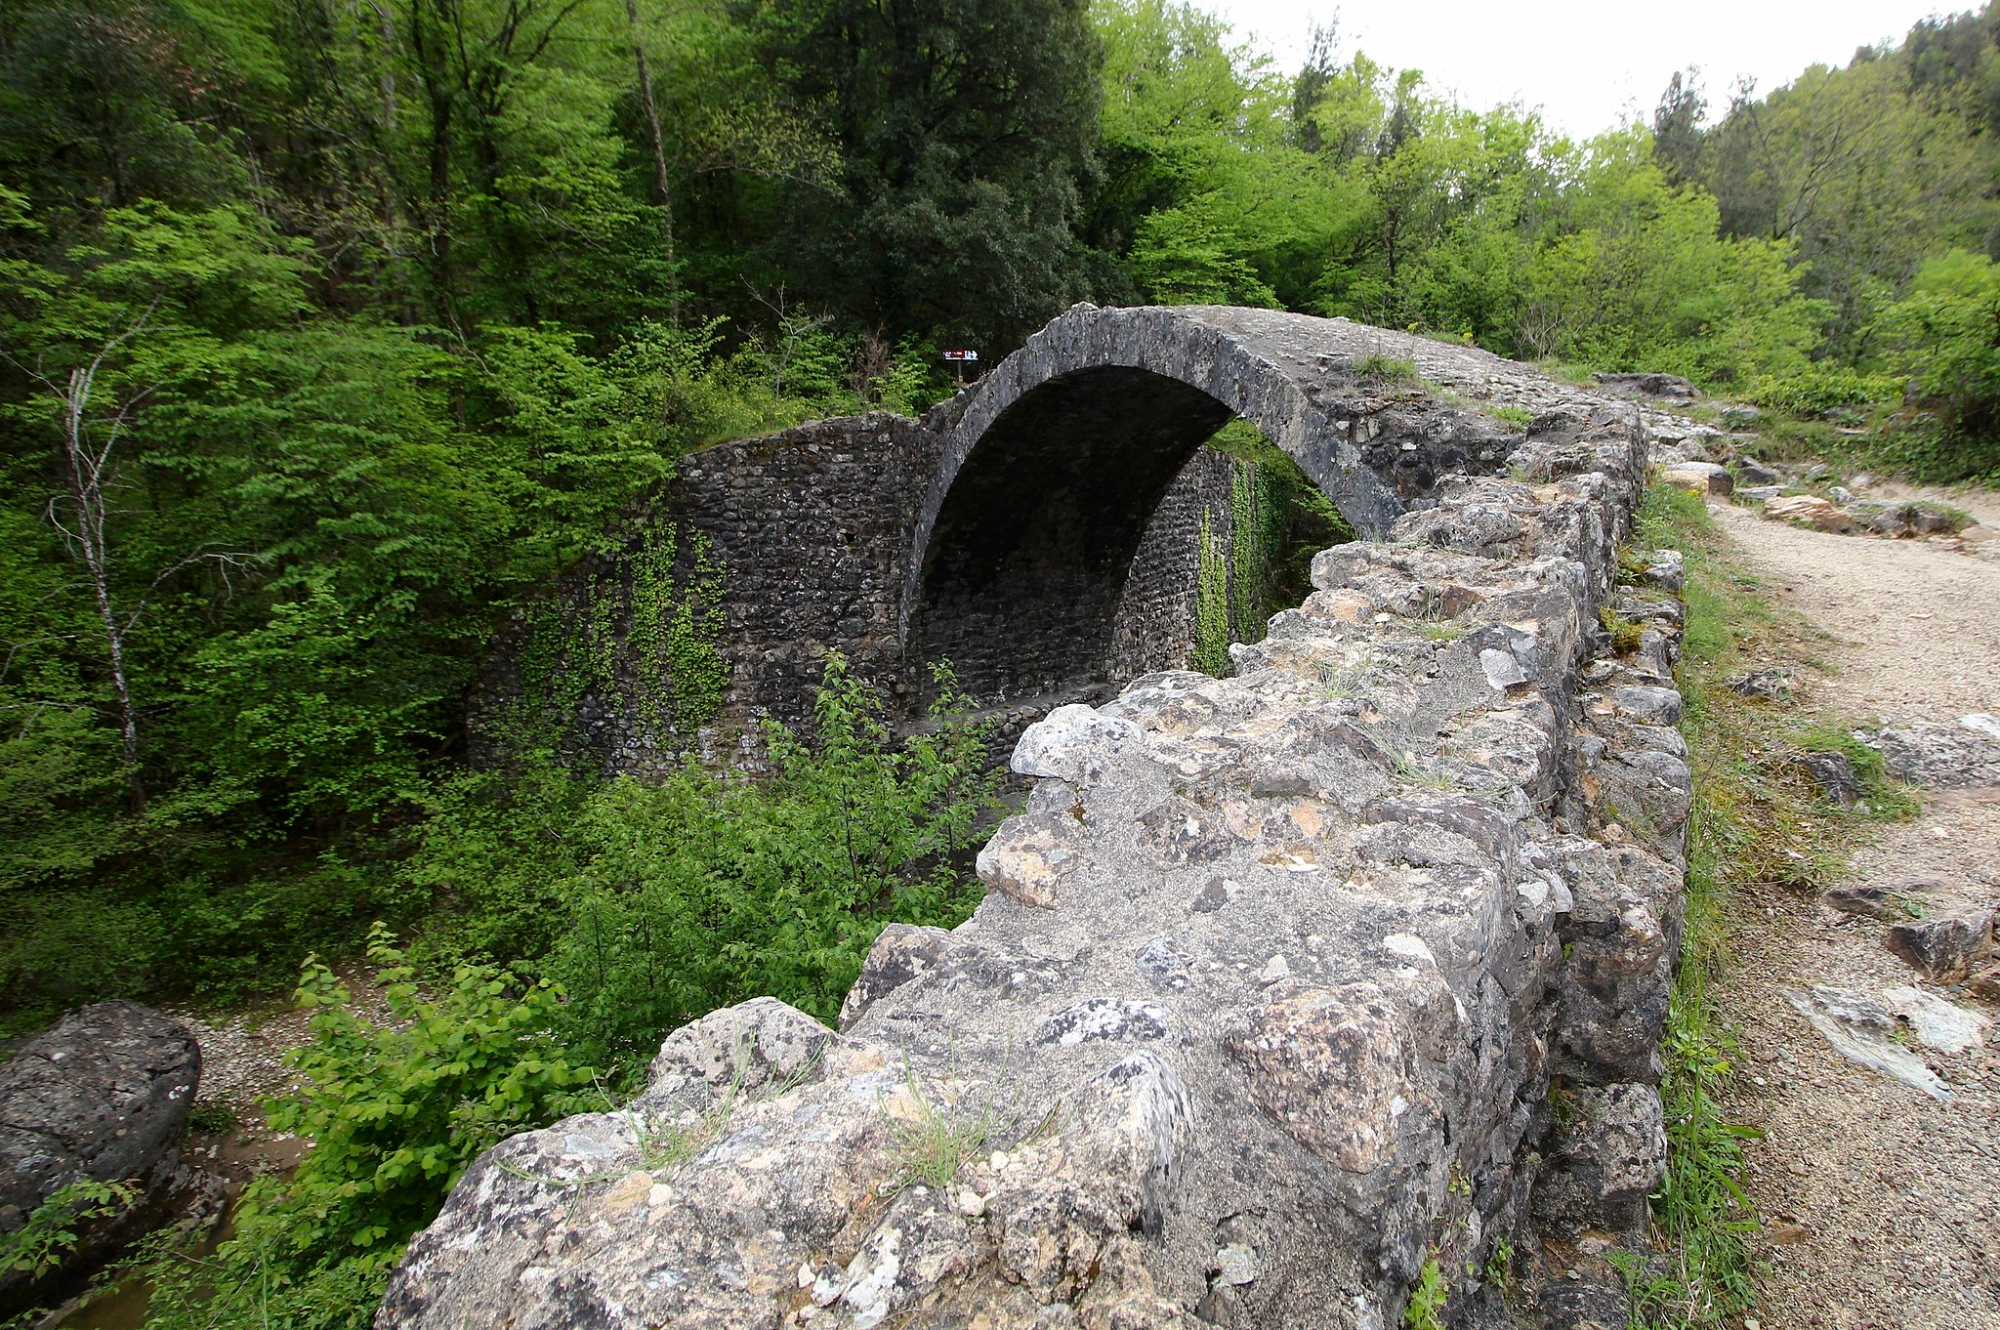 The Ponte della Pia